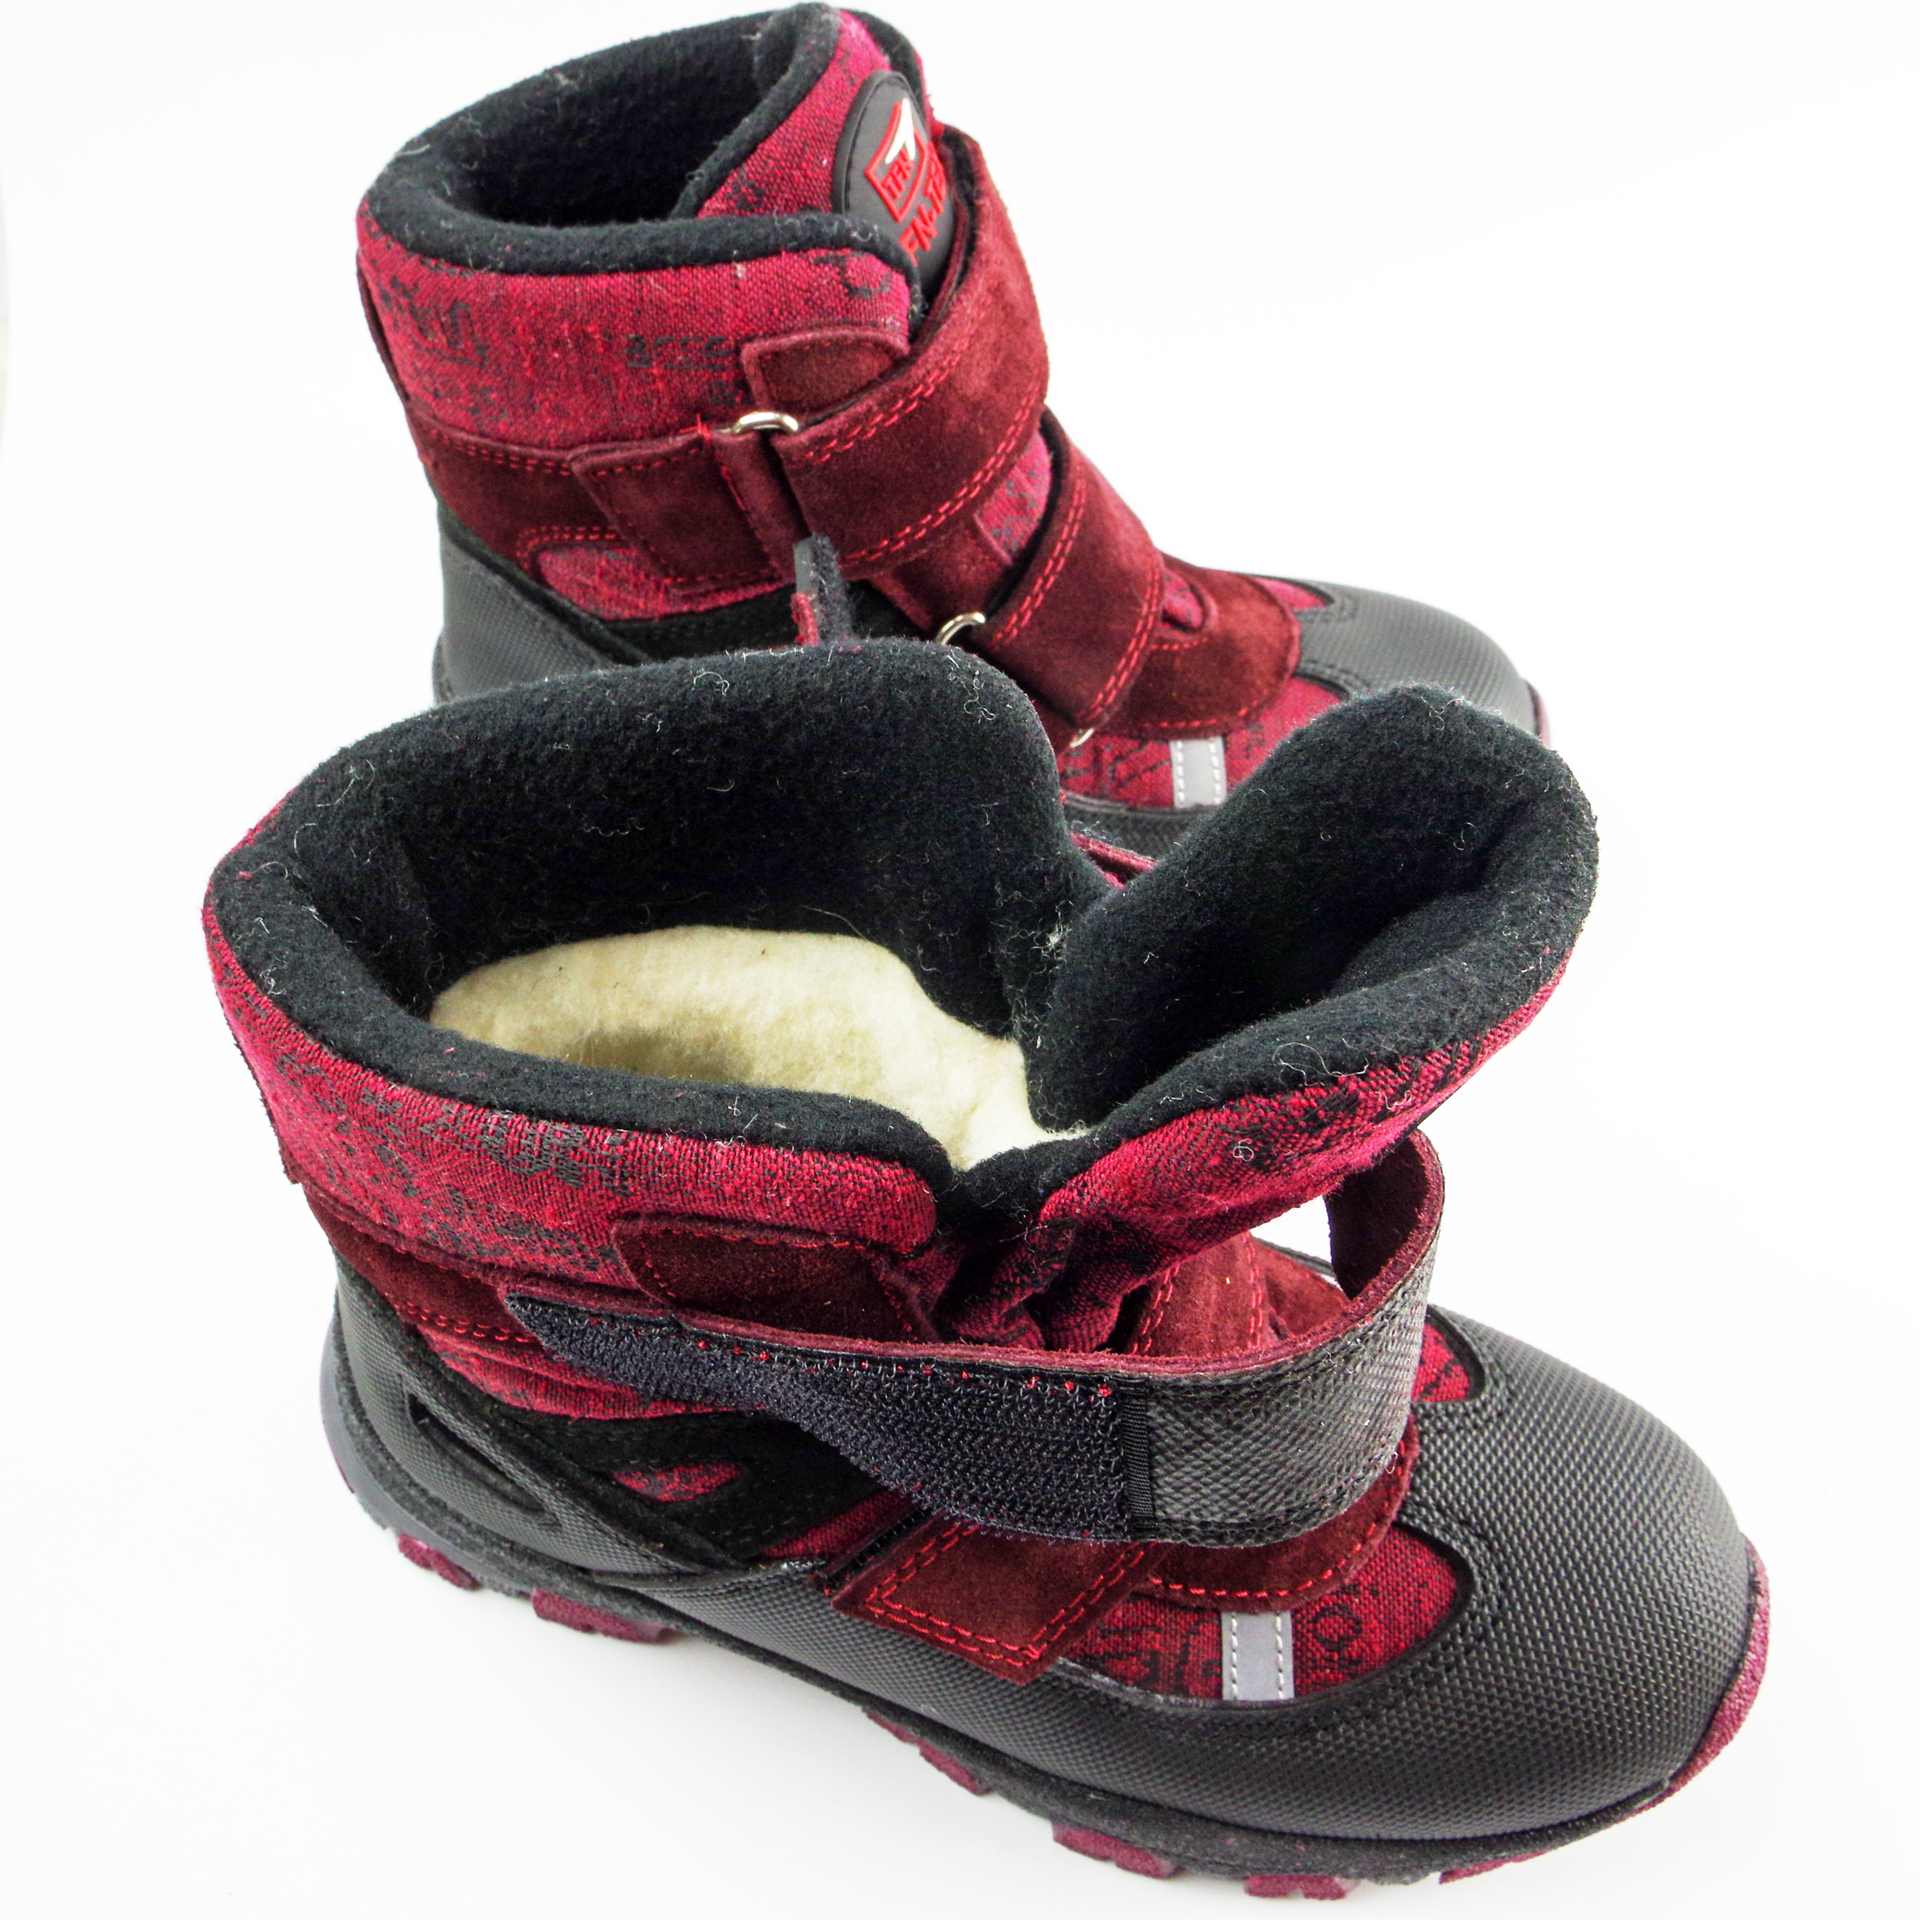 Зимові мембранні черевики (2153) для дівчинки, матеріал Мембрана, Червоний колір, 31-36 розміри – Sole Kids. Фото 4